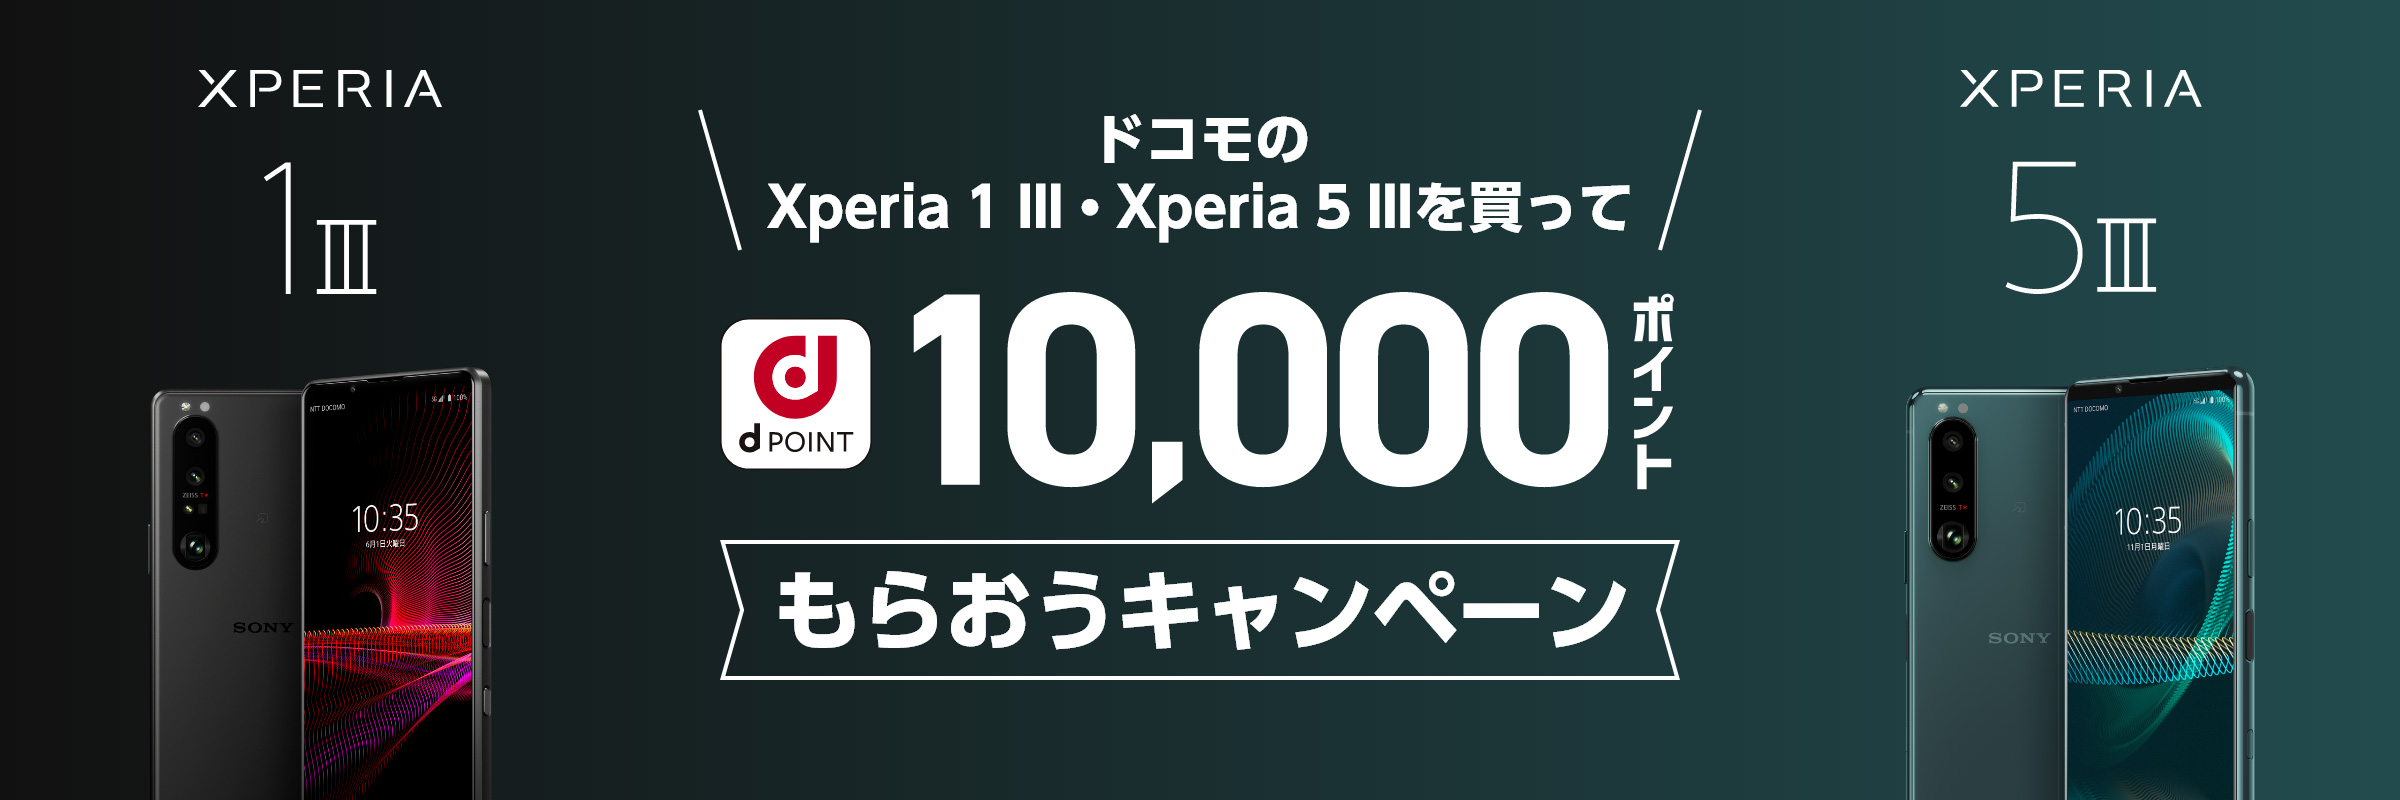 ドコモでXperia 1/5 IIIを買うと1万dポイントが貰える。白ロム購入も対象。～1/31。